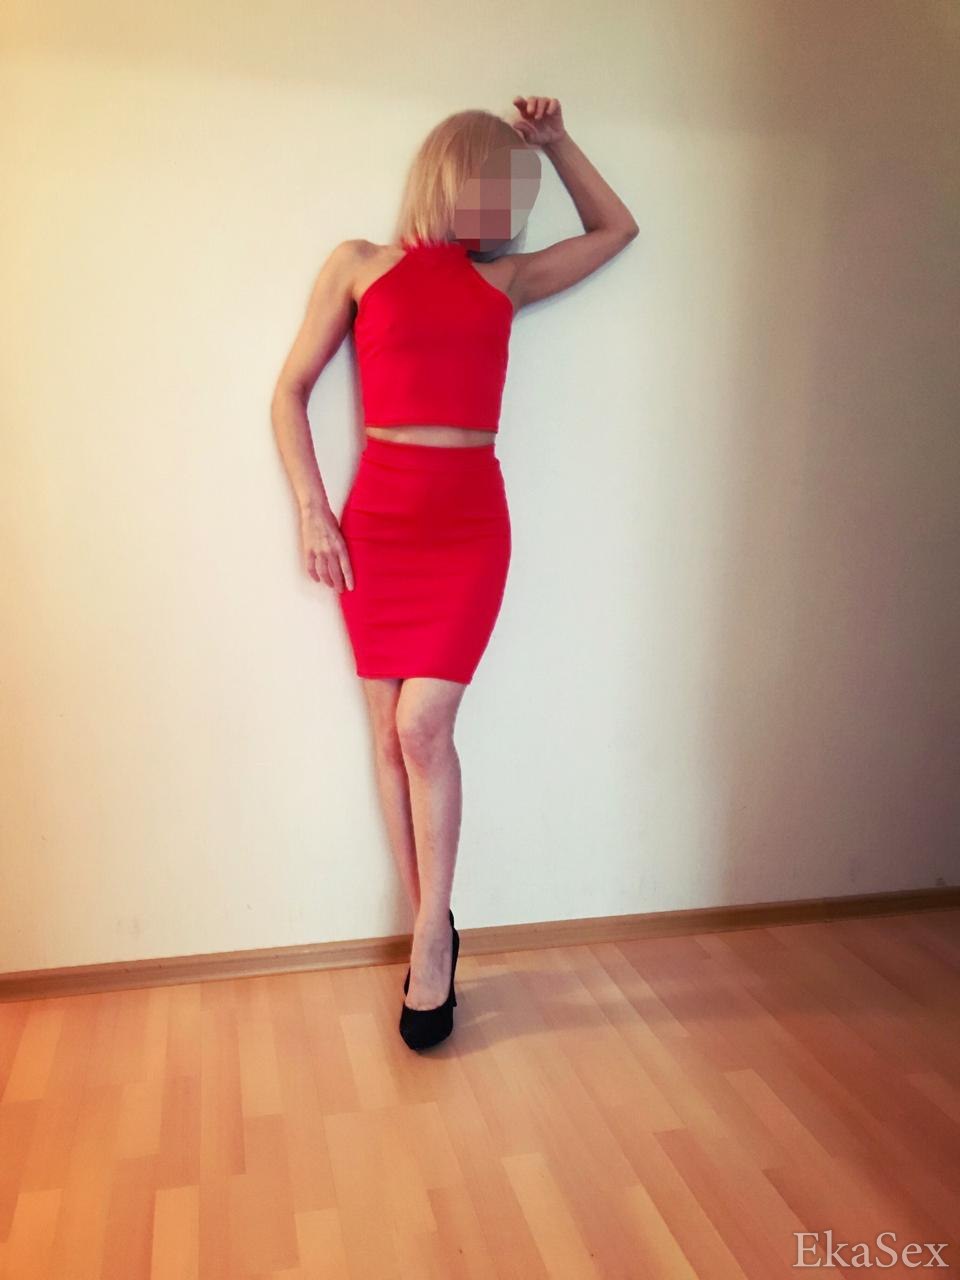 фото проститутки Вероника из города Екатеринбург